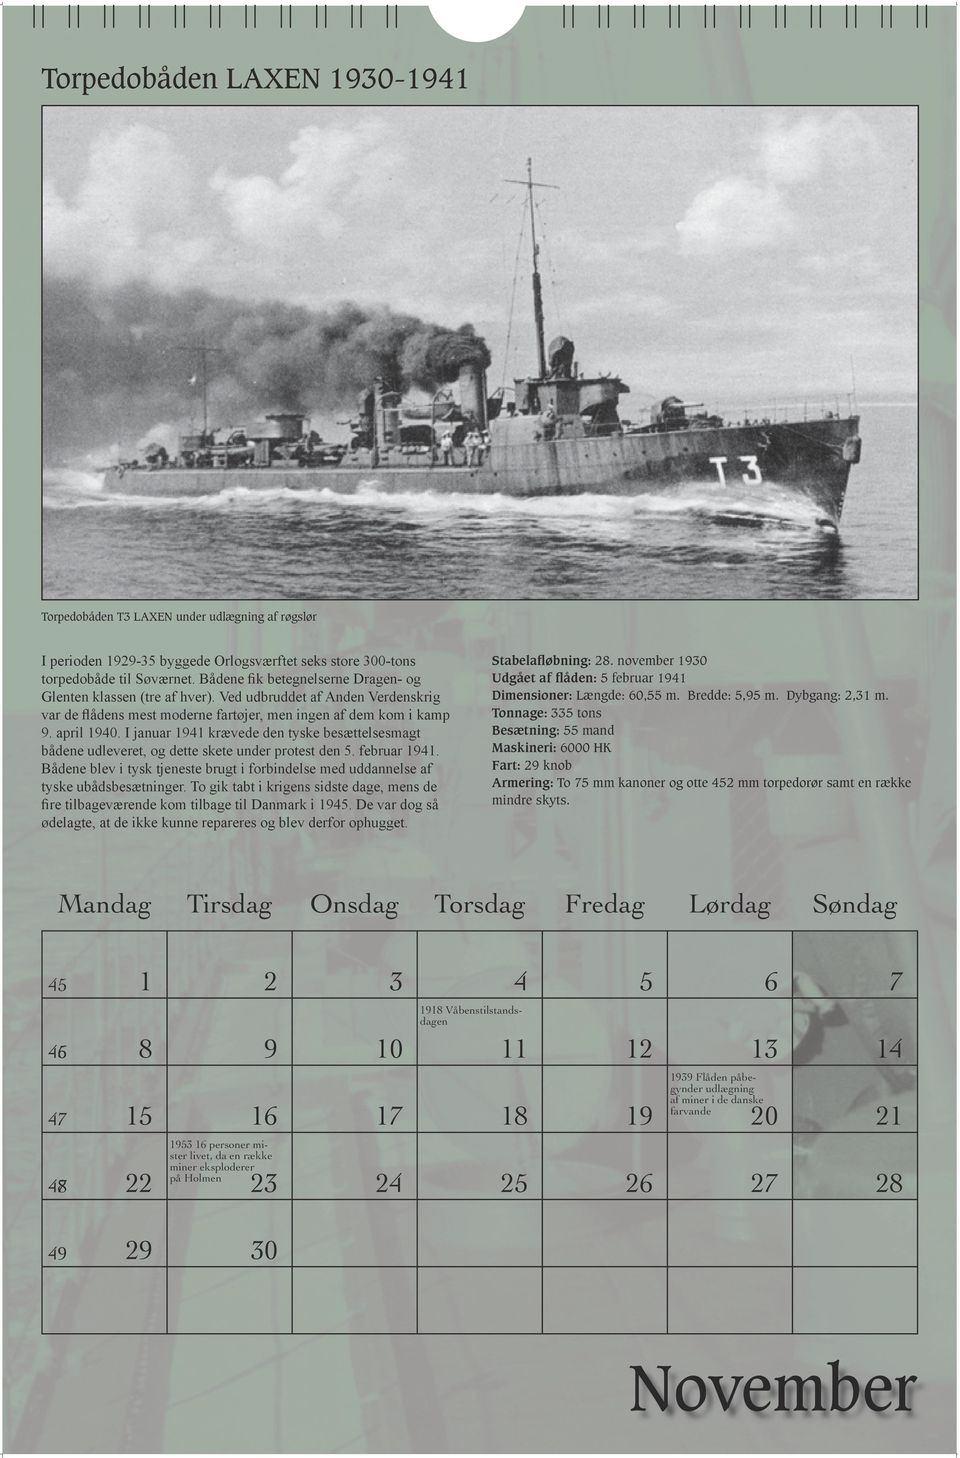 I januar 1941 krævede den tyske besættelsesmagt bådene udleveret, og dette skete under protest den 5. februar 1941.